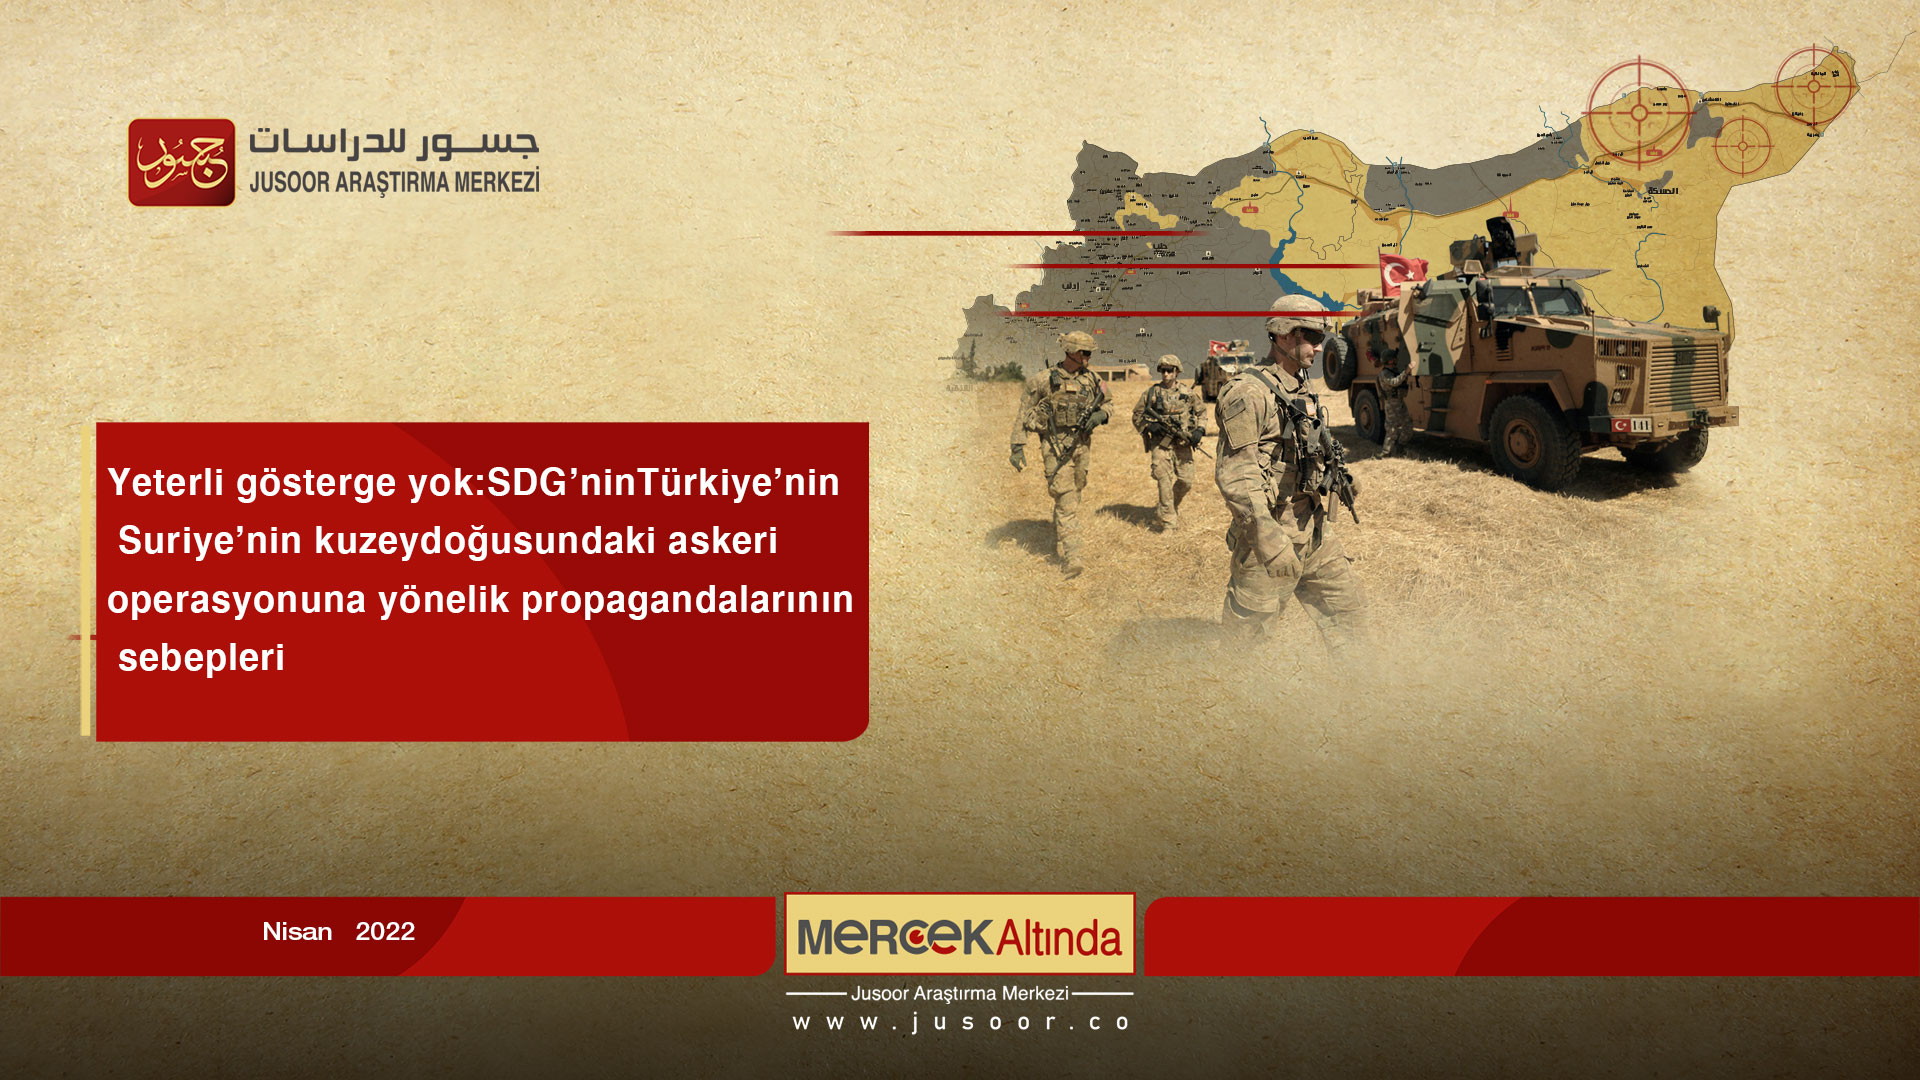 Yeterli gösterge yok: SDG’nin Türkiye’nin Suriye’nin kuzeydoğusundaki askeri operasyonuna yönelik propagandalarının sebepleri